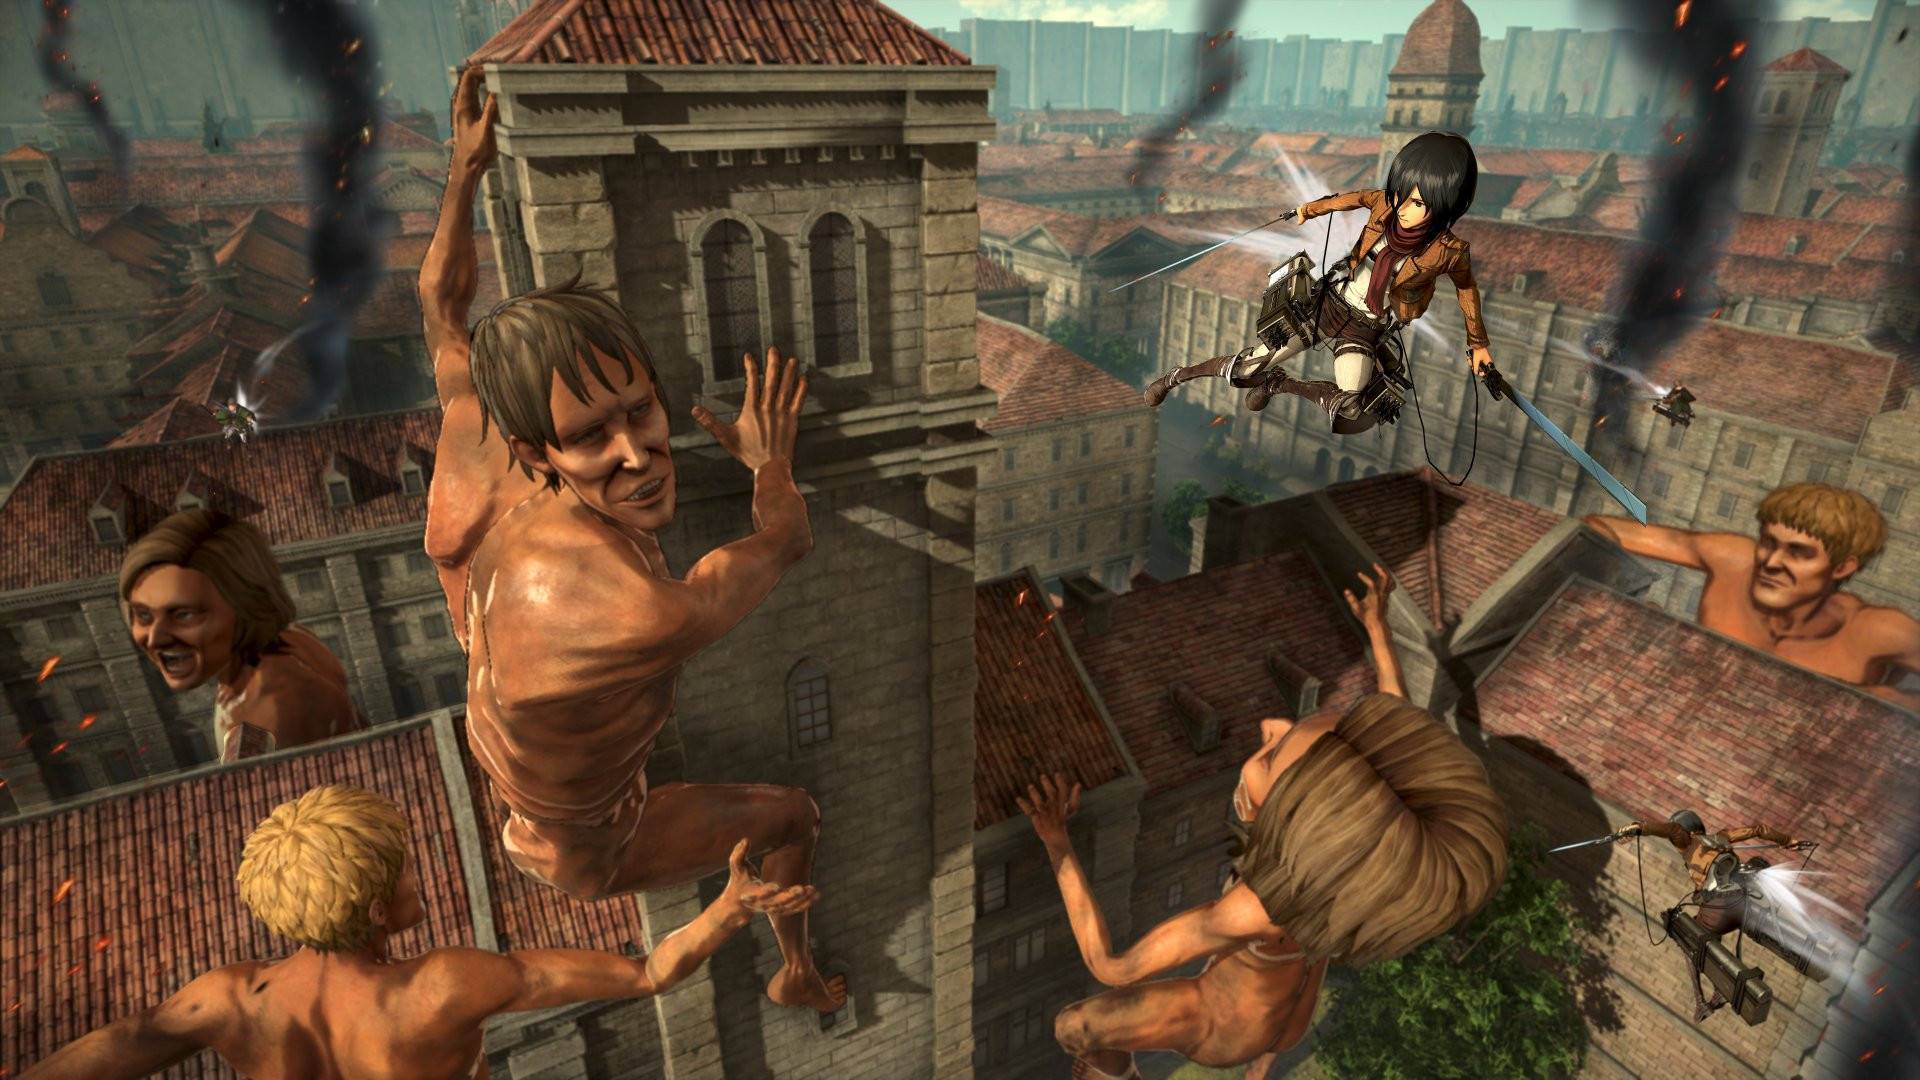 Jogo PS4 Attack On Titan 2